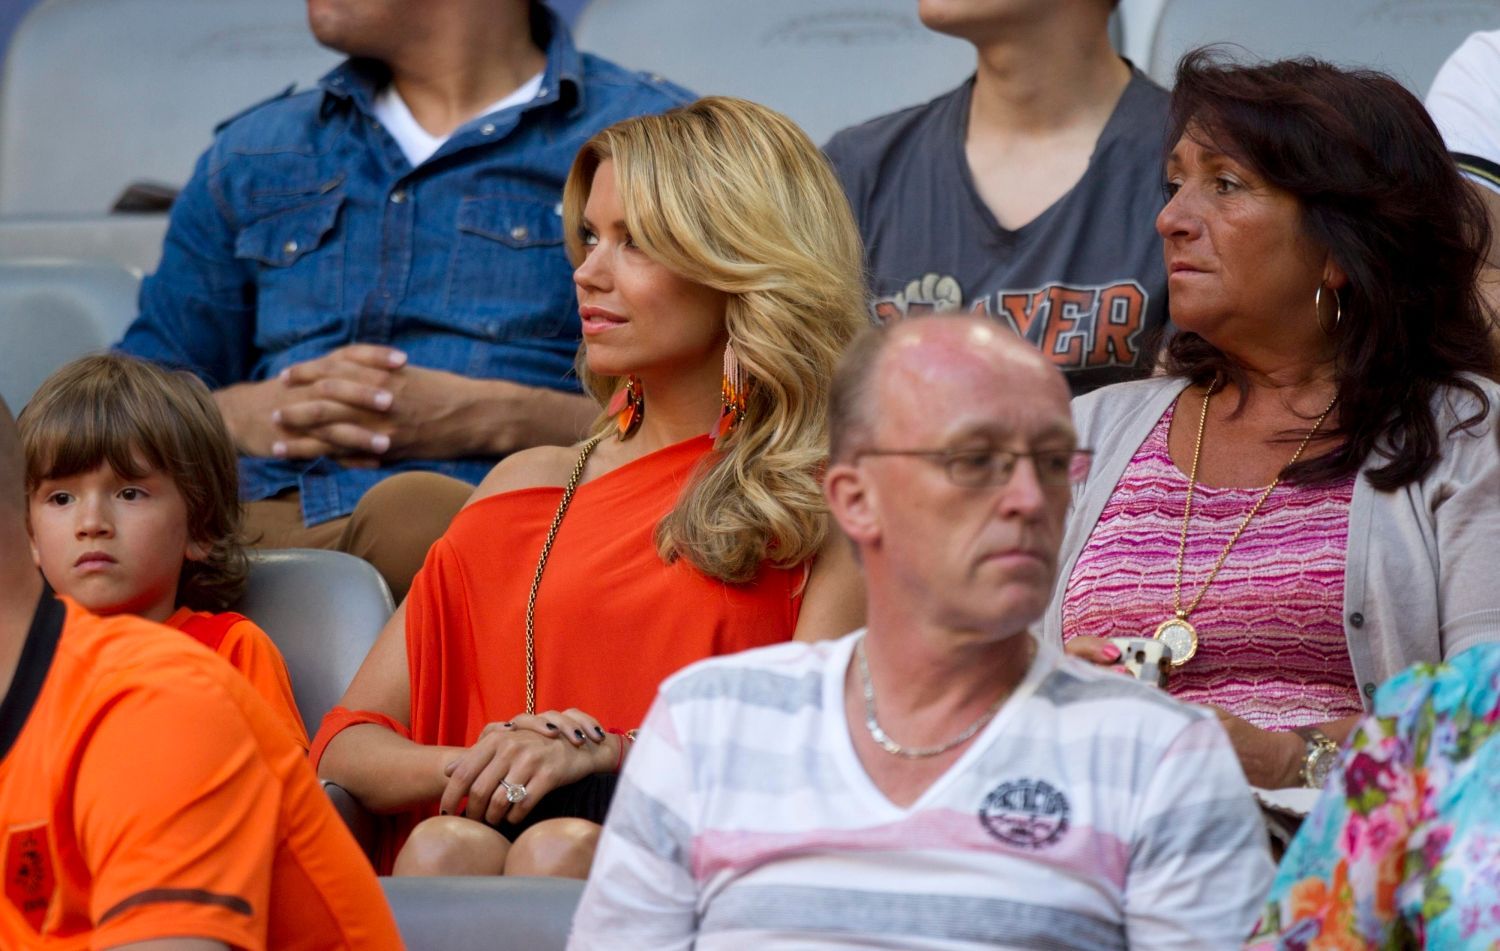 Manželka Rafaela van der Vaarta, Sylvie sleduje utkání Nizozemska na Euru 2012